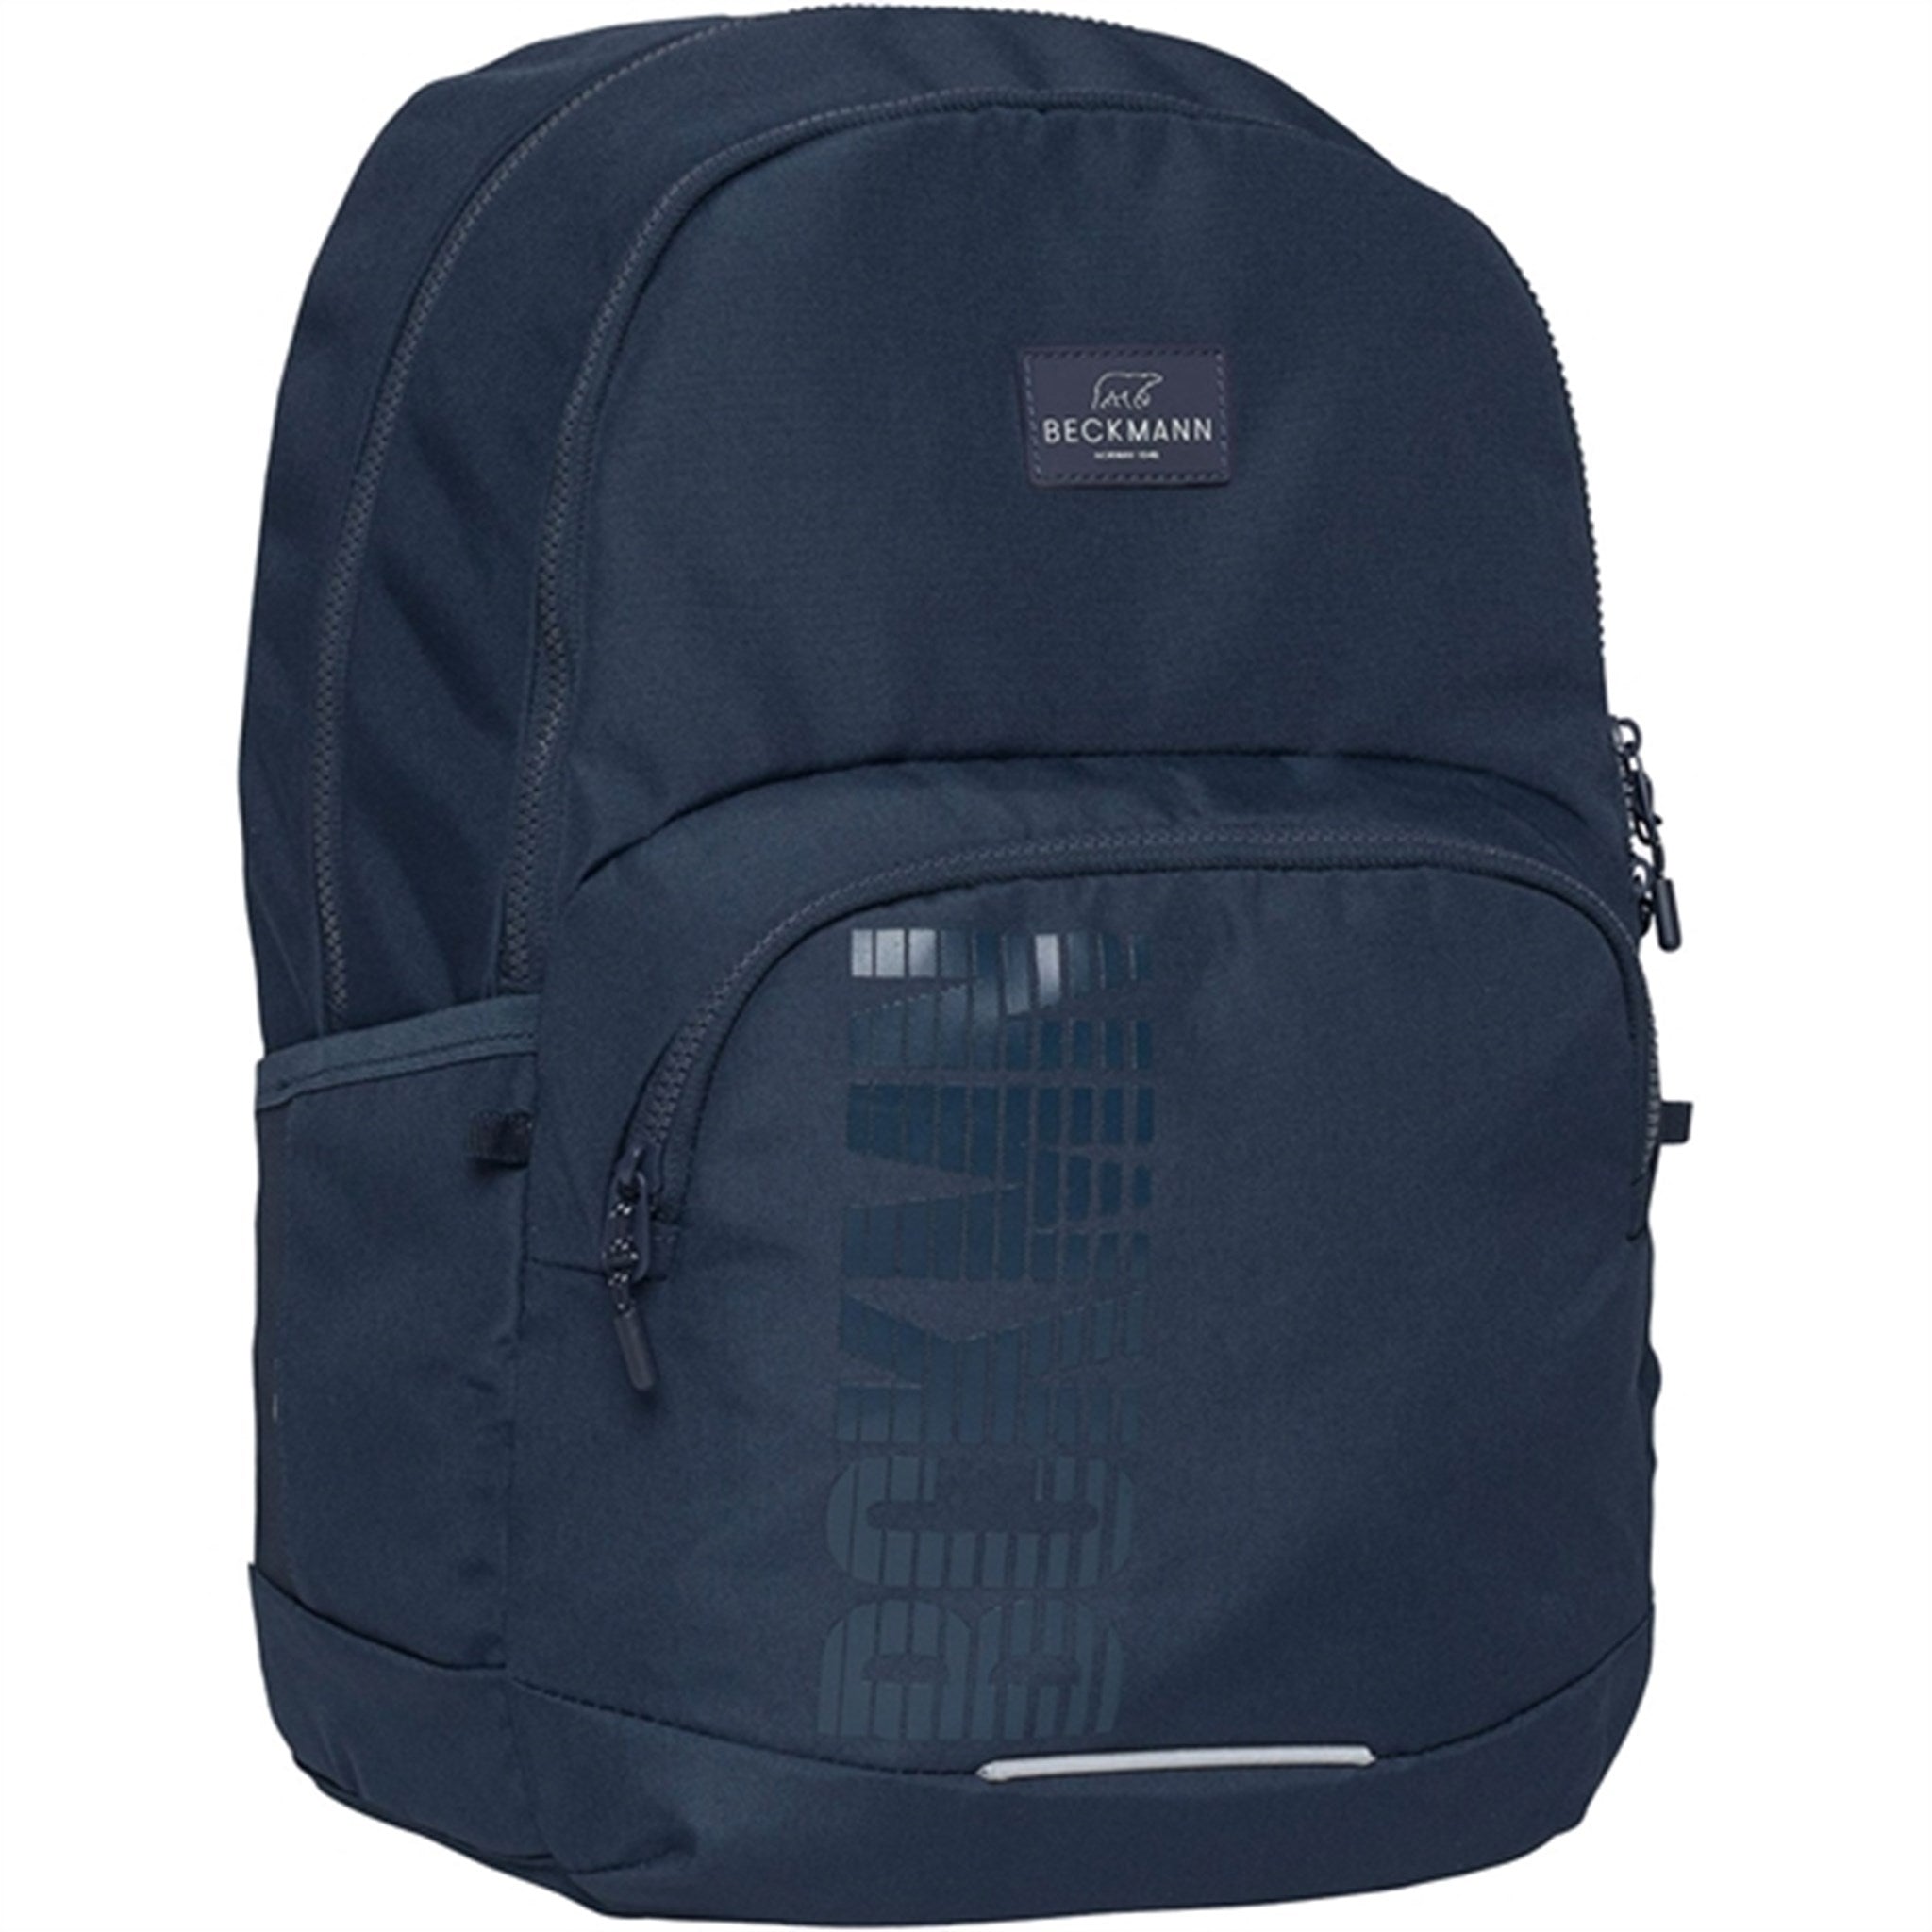 Beckmann Sport Junior Backpack Blue 9